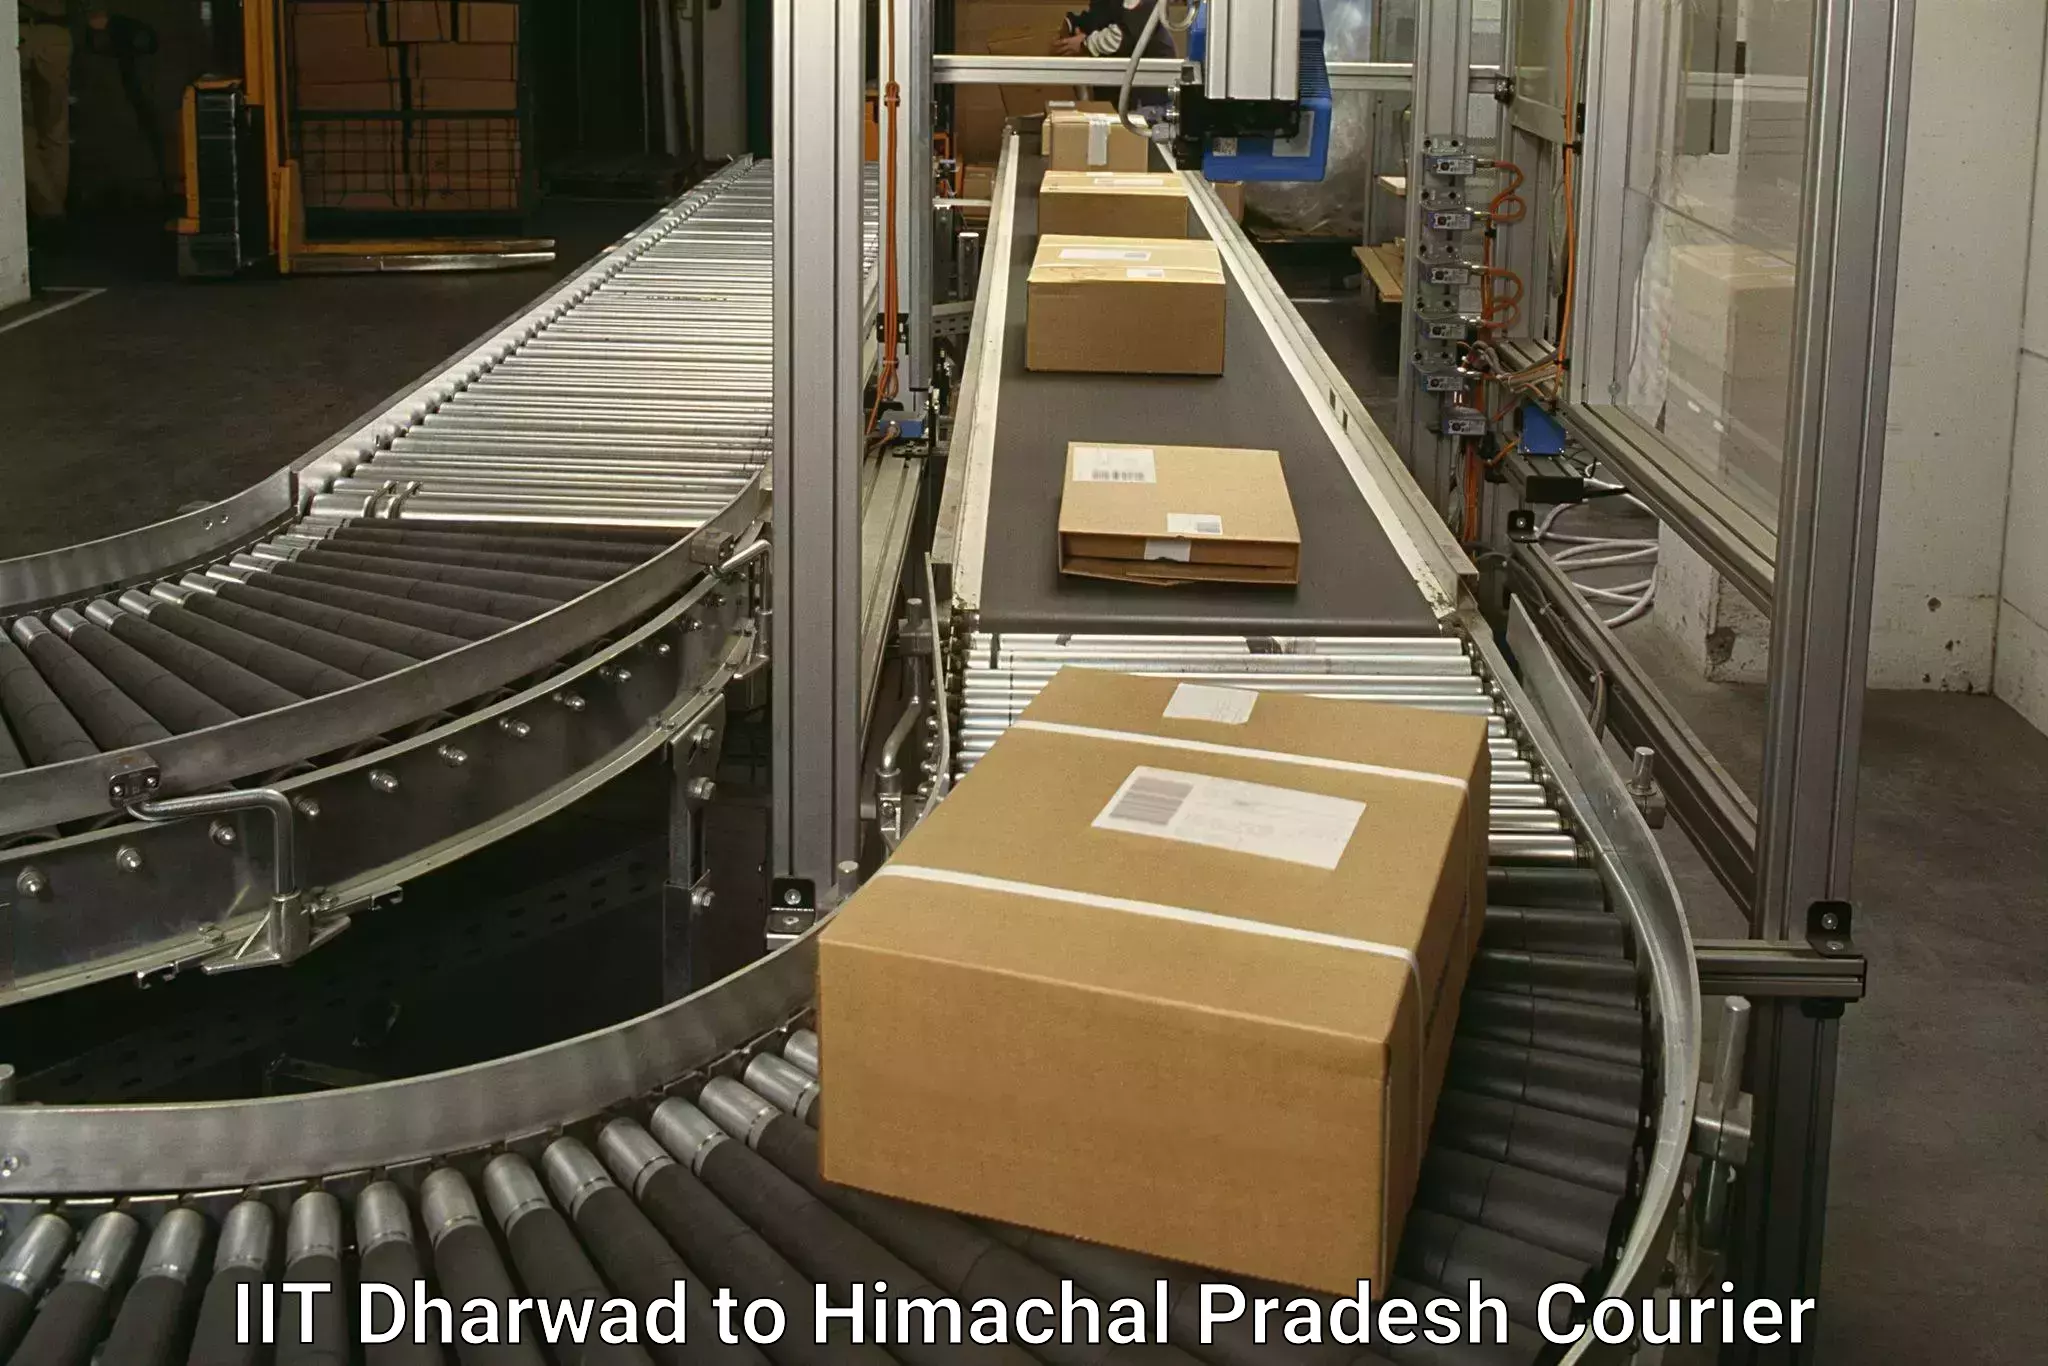 Express package handling IIT Dharwad to Ghumarwin